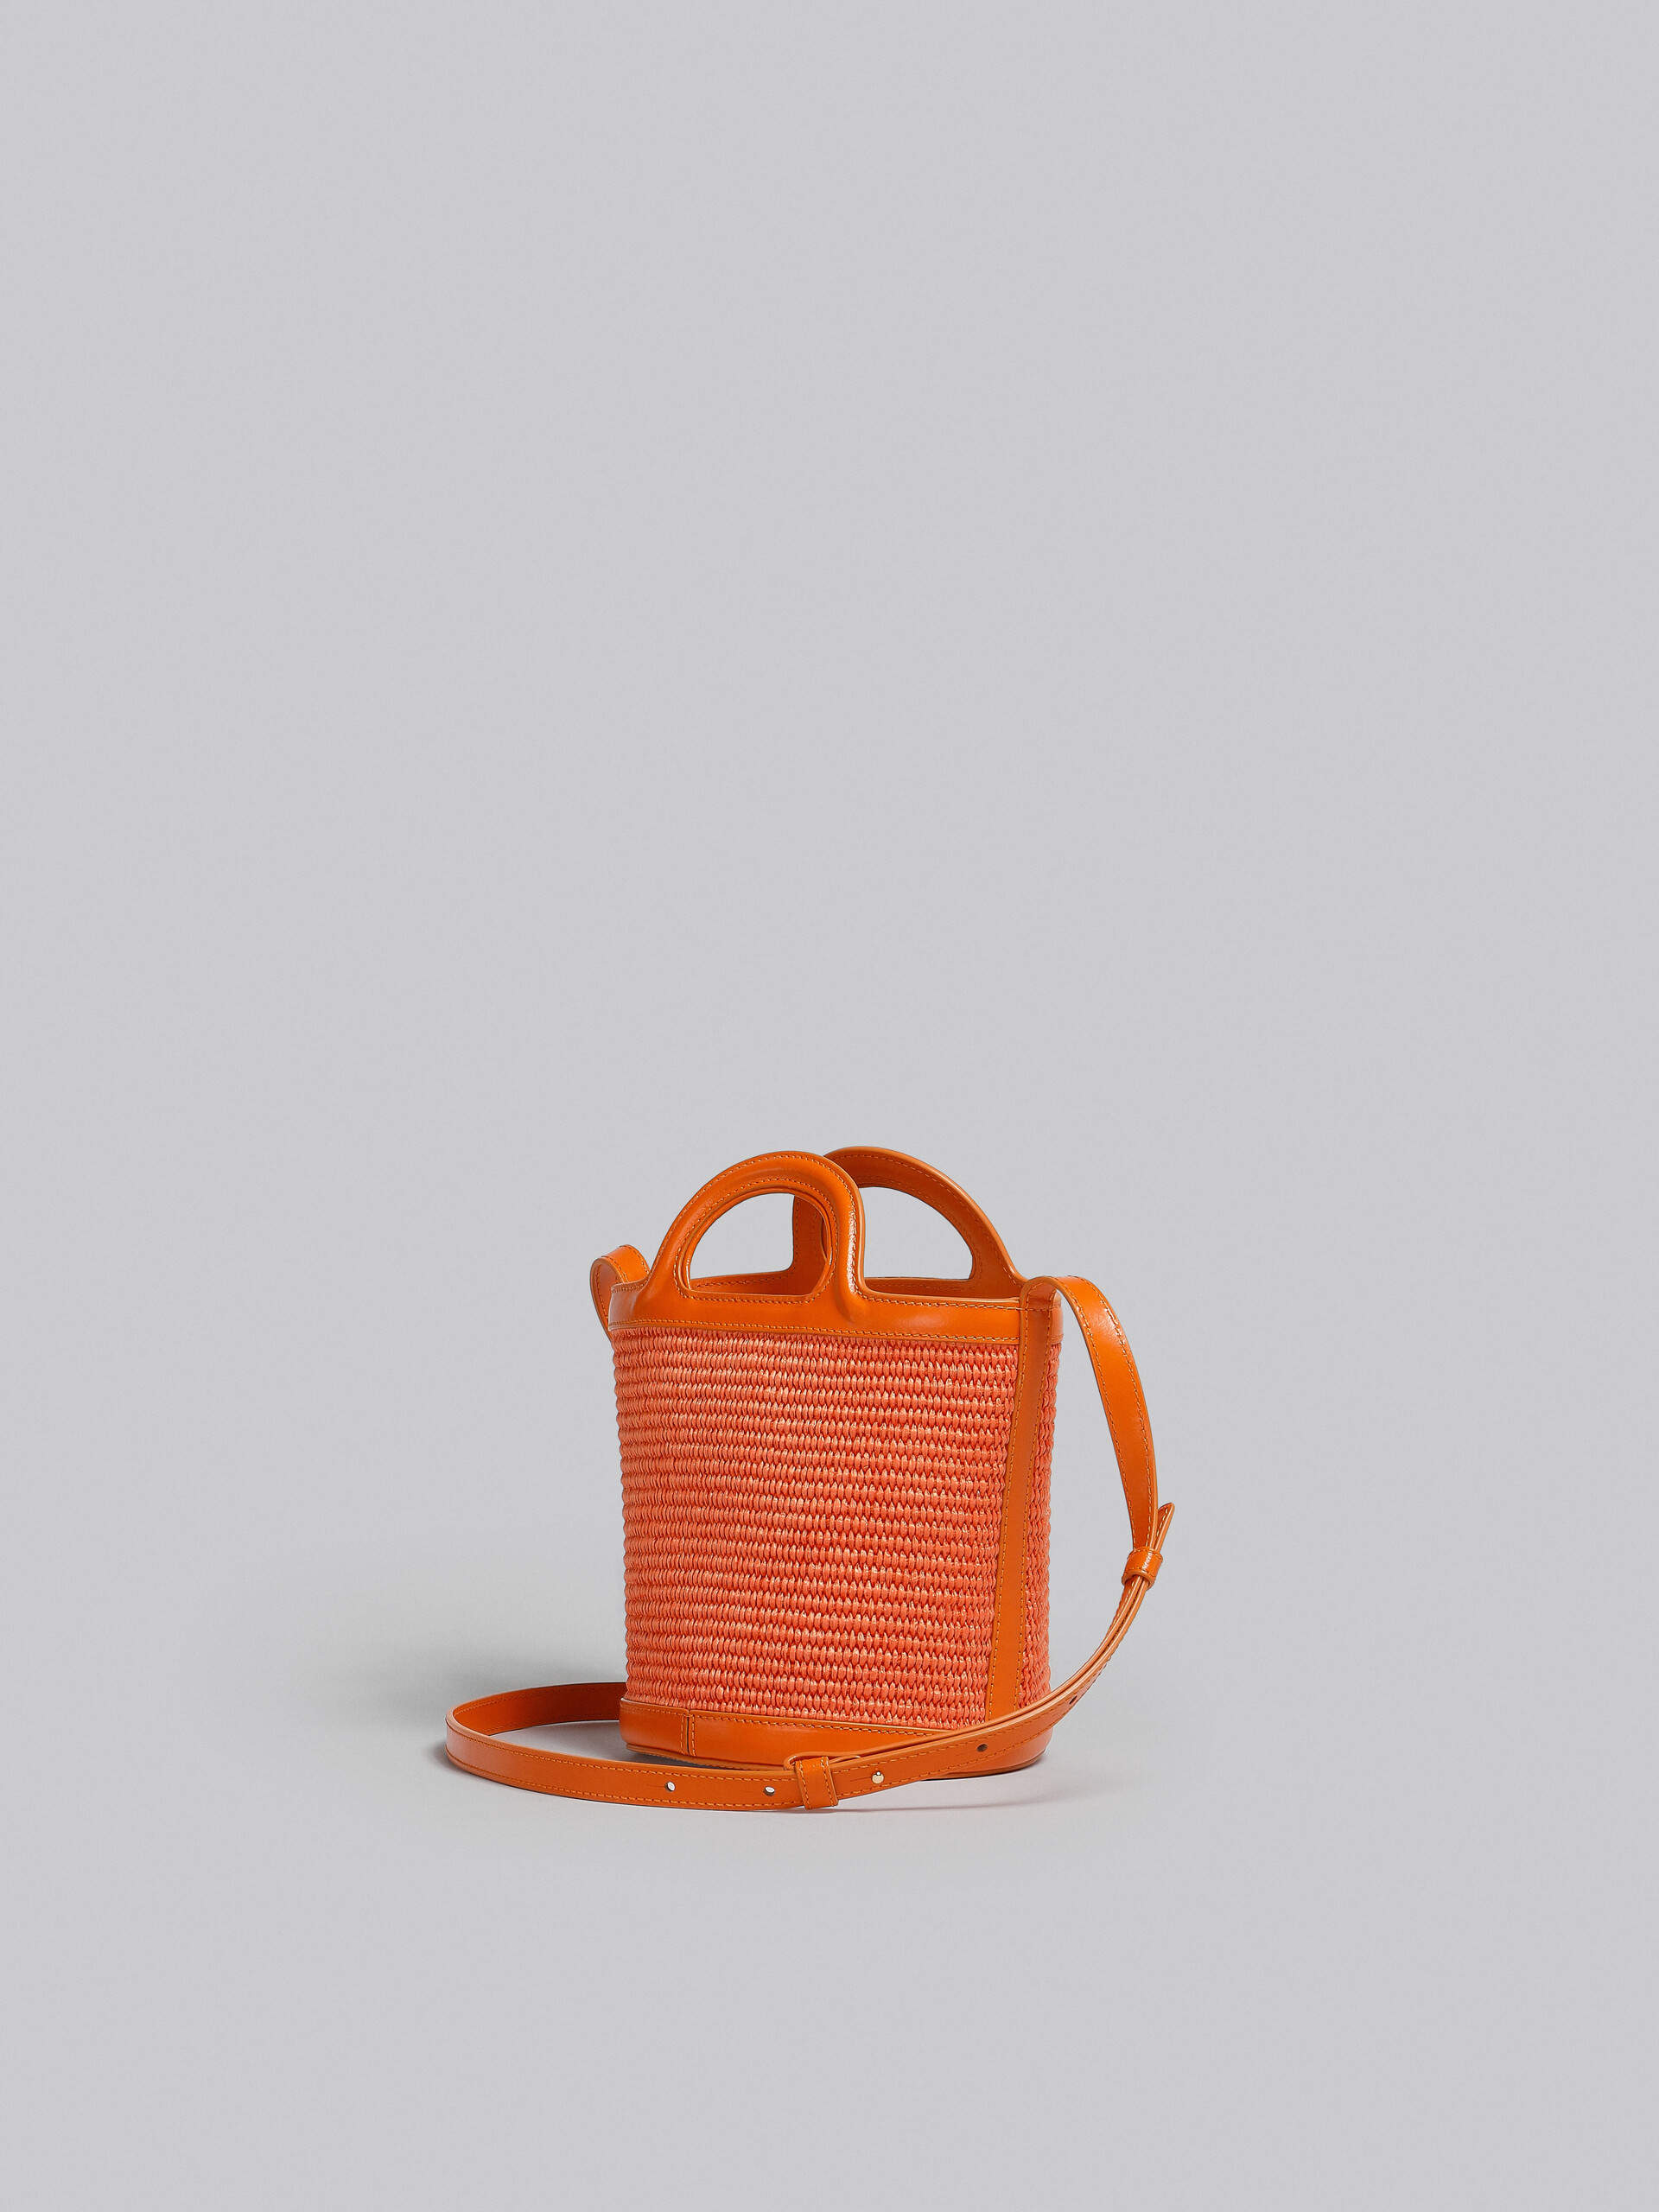 Bolso cubo pequeño Tropicalia de piel naranja y rafia - Bolsos de hombro - Image 3